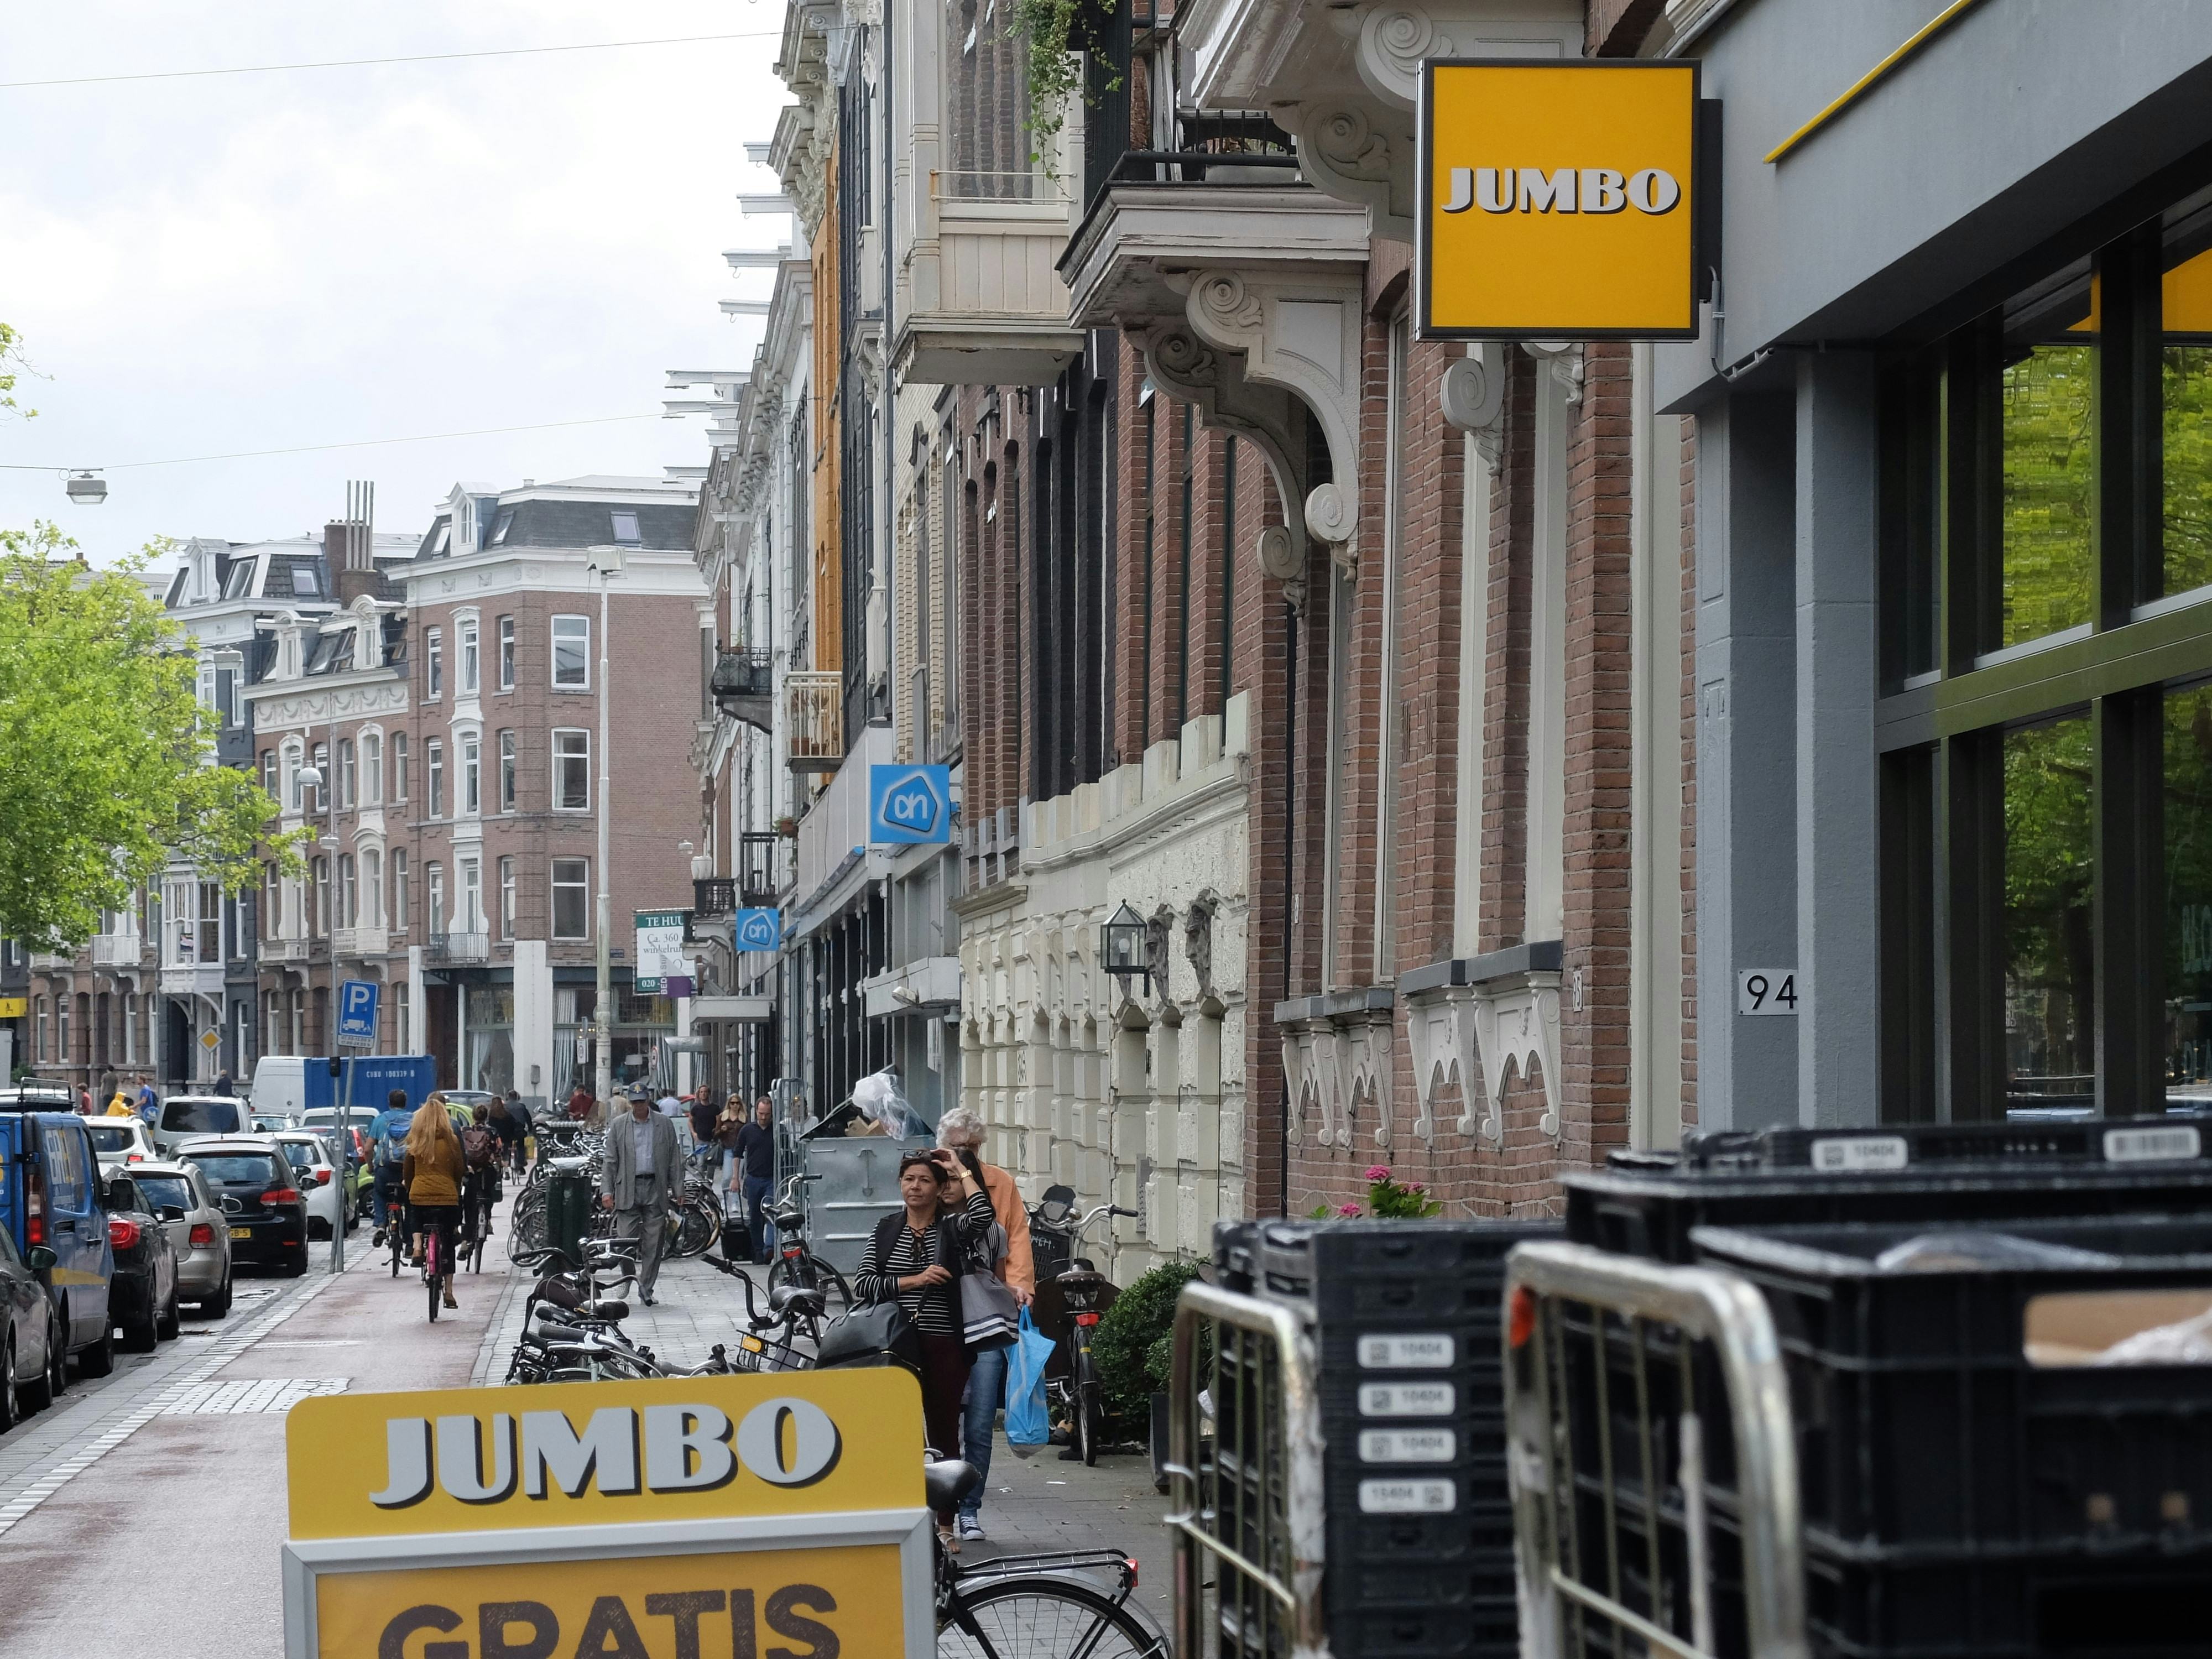 Jumbo en Albert Heijn concurreren lokaal steeds vaker door de groei van het aantal Jumbo-winkels.